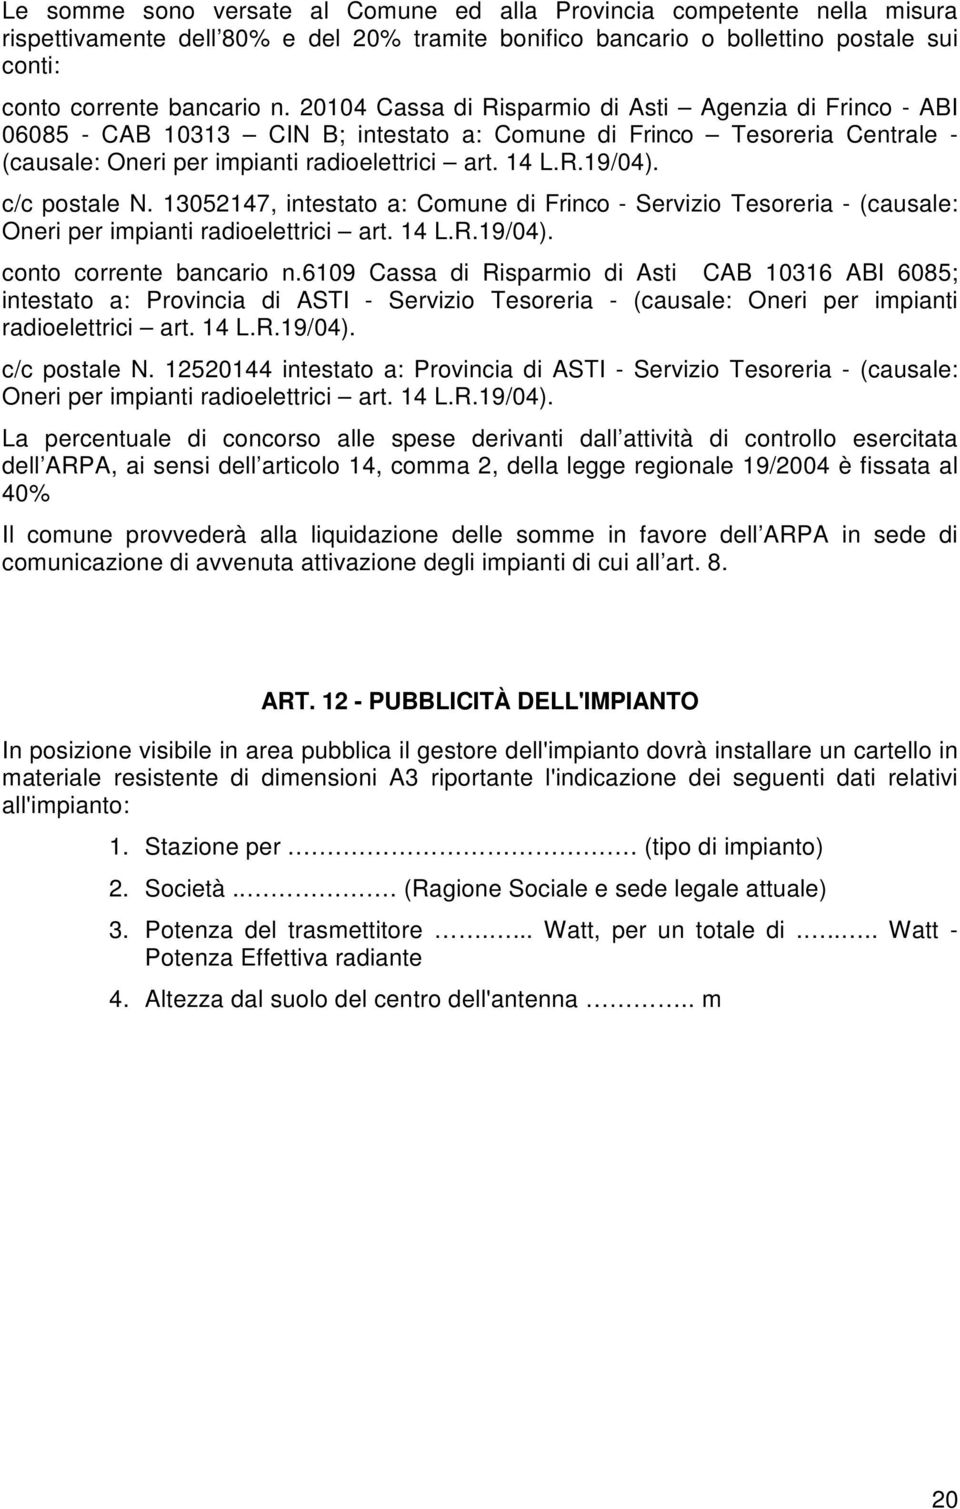 c/c postale N. 13052147, intestato a: Comune di Frinco - Servizio Tesoreria - (causale: Oneri per impianti radioelettrici art. 14 L.R.19/04). conto corrente bancario n.